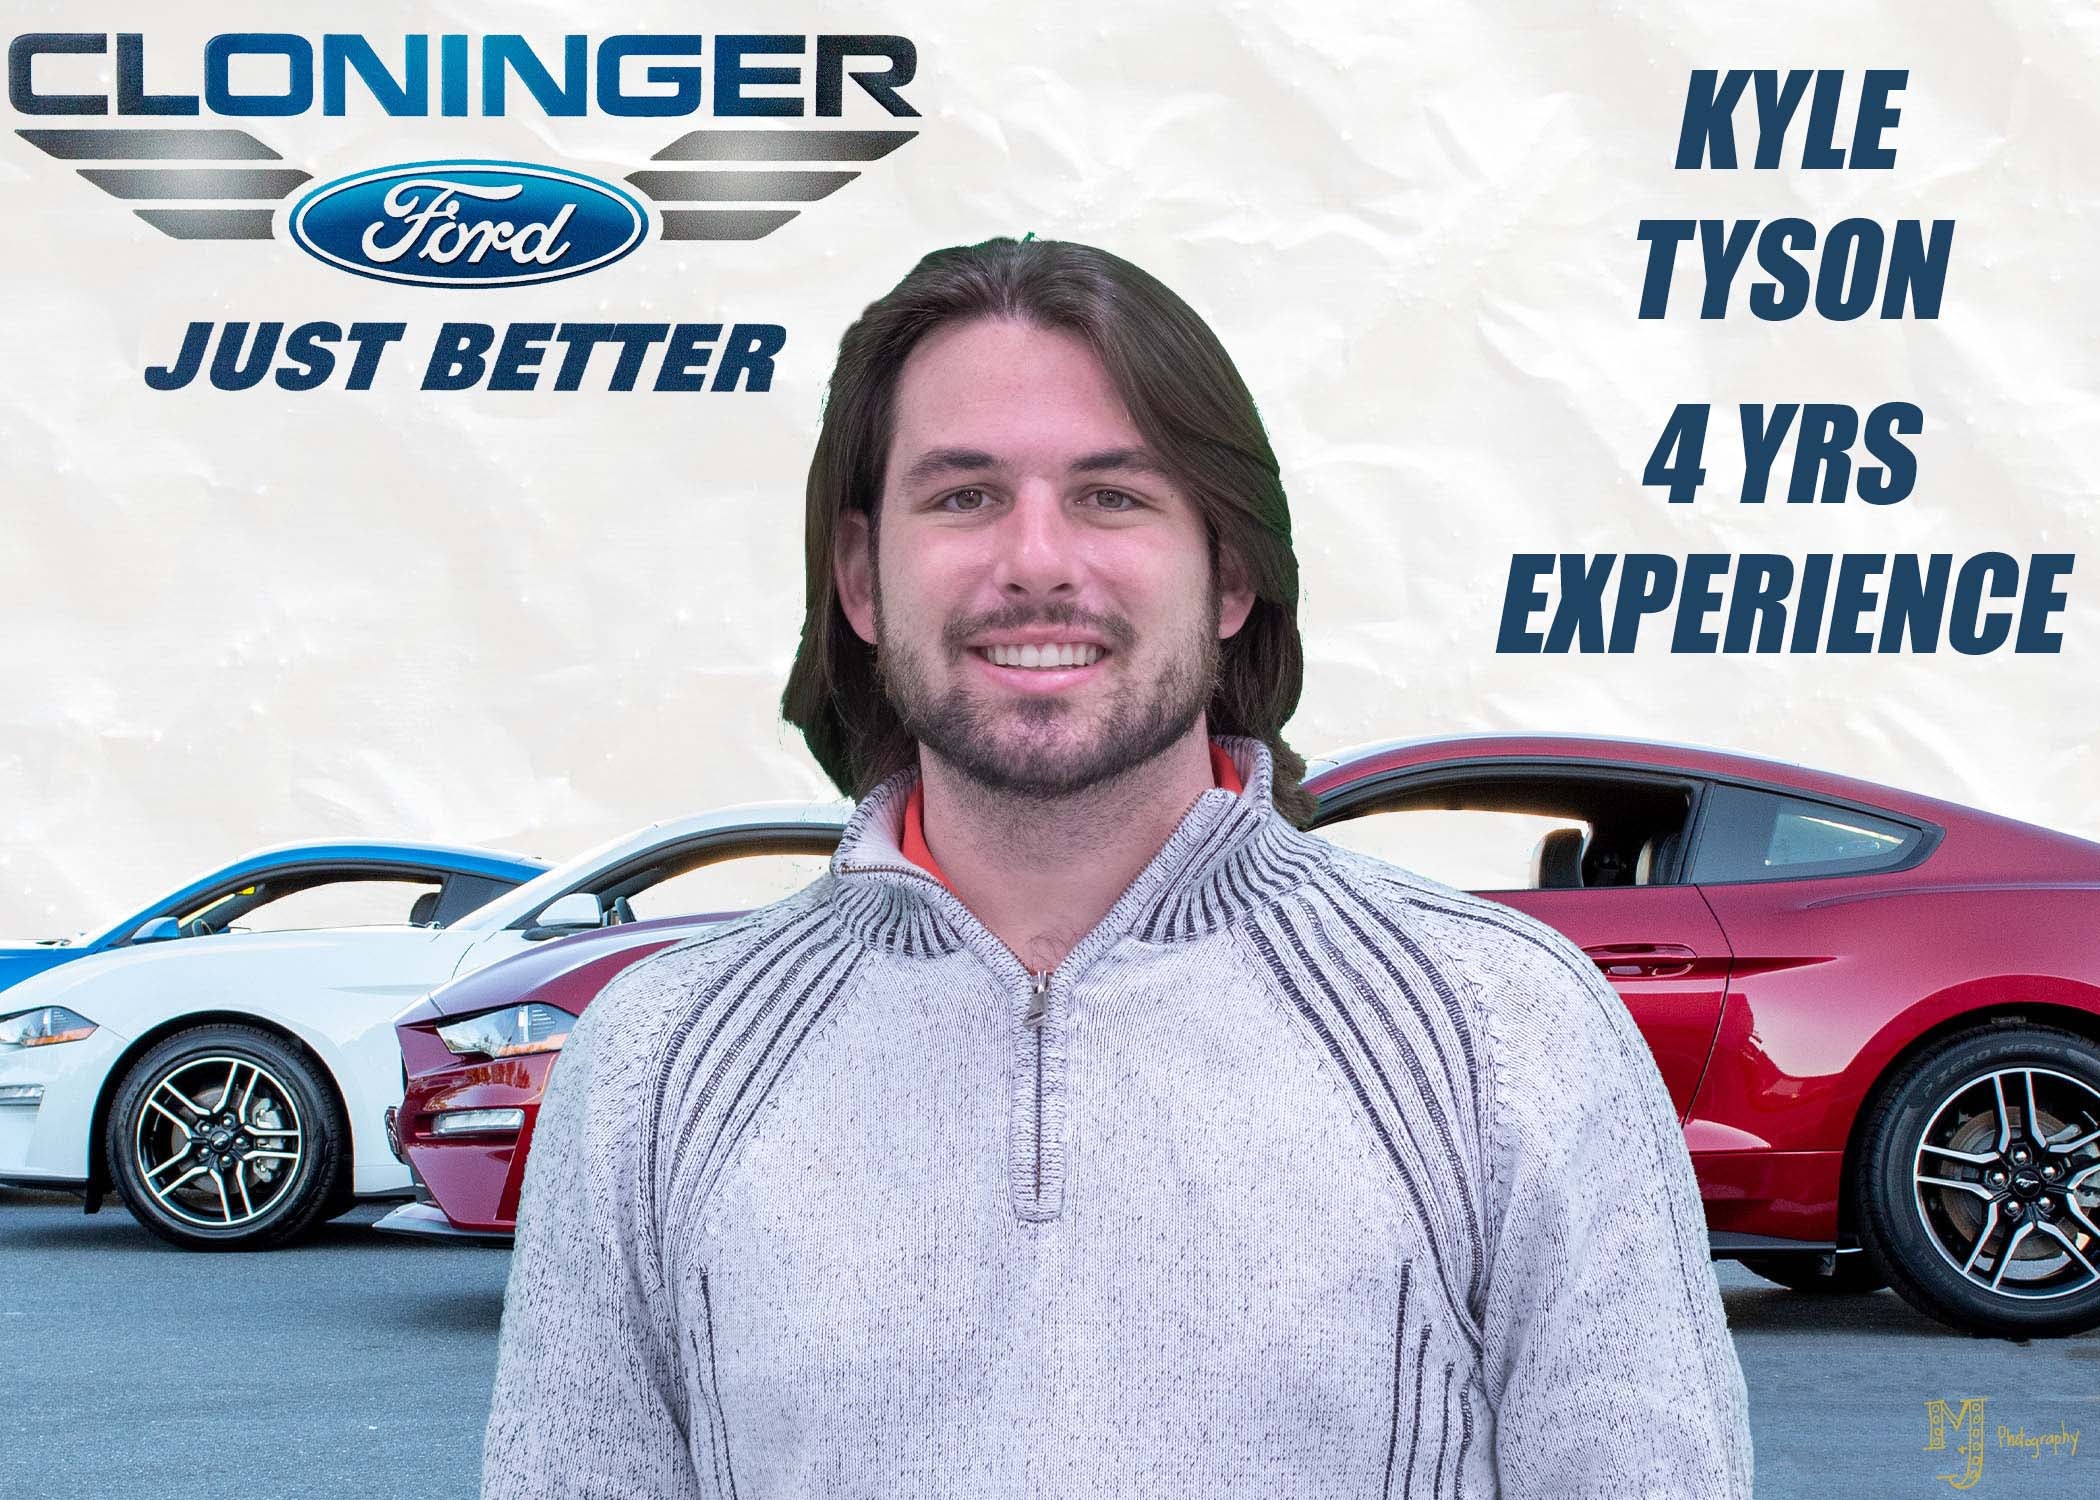 Kyle Tyson